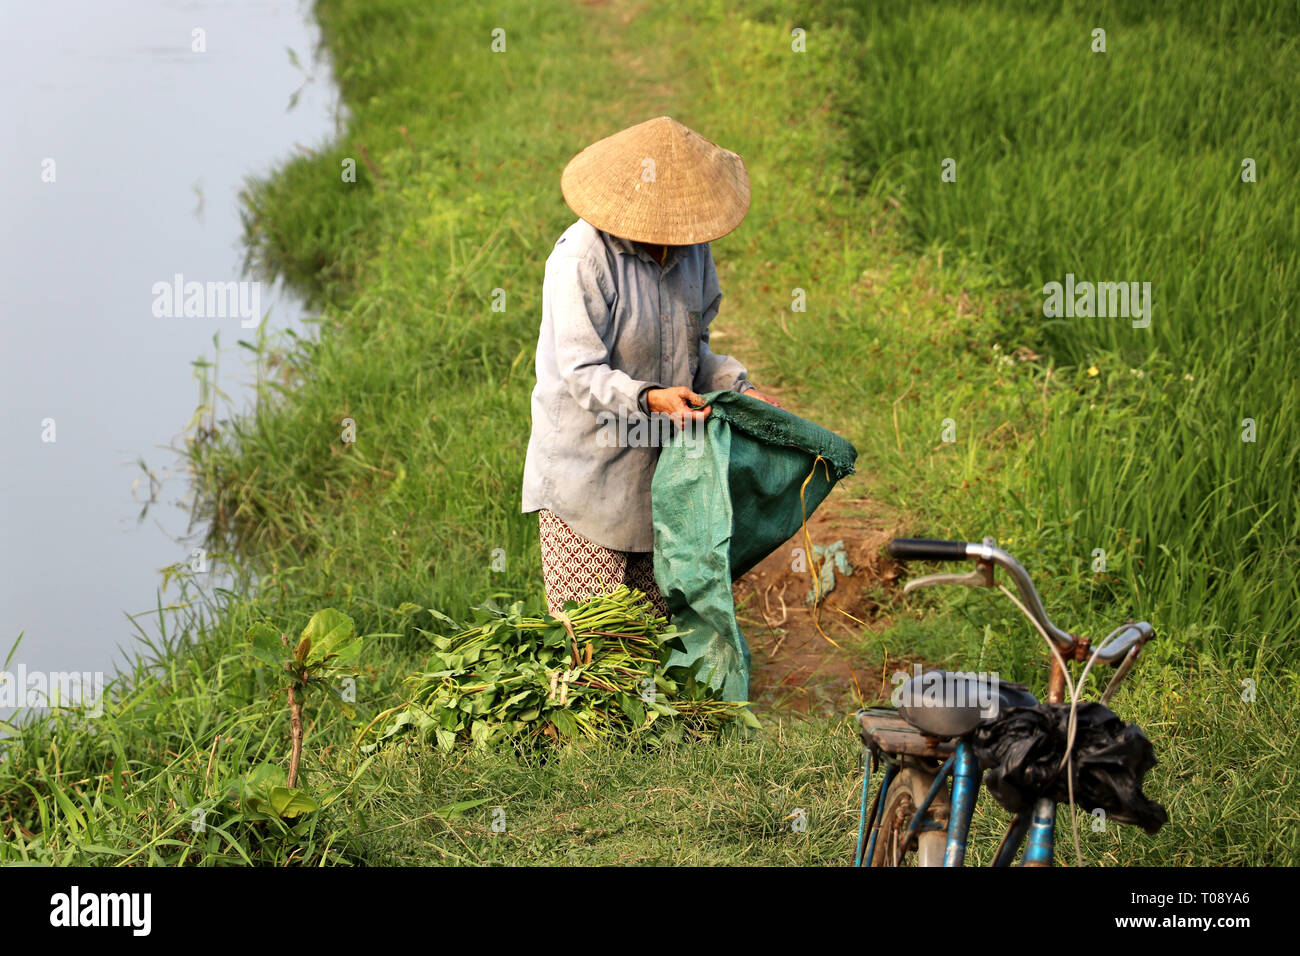 Agriculteur à la récolte du riz en Asie - Viêt Nam Banque D'Images